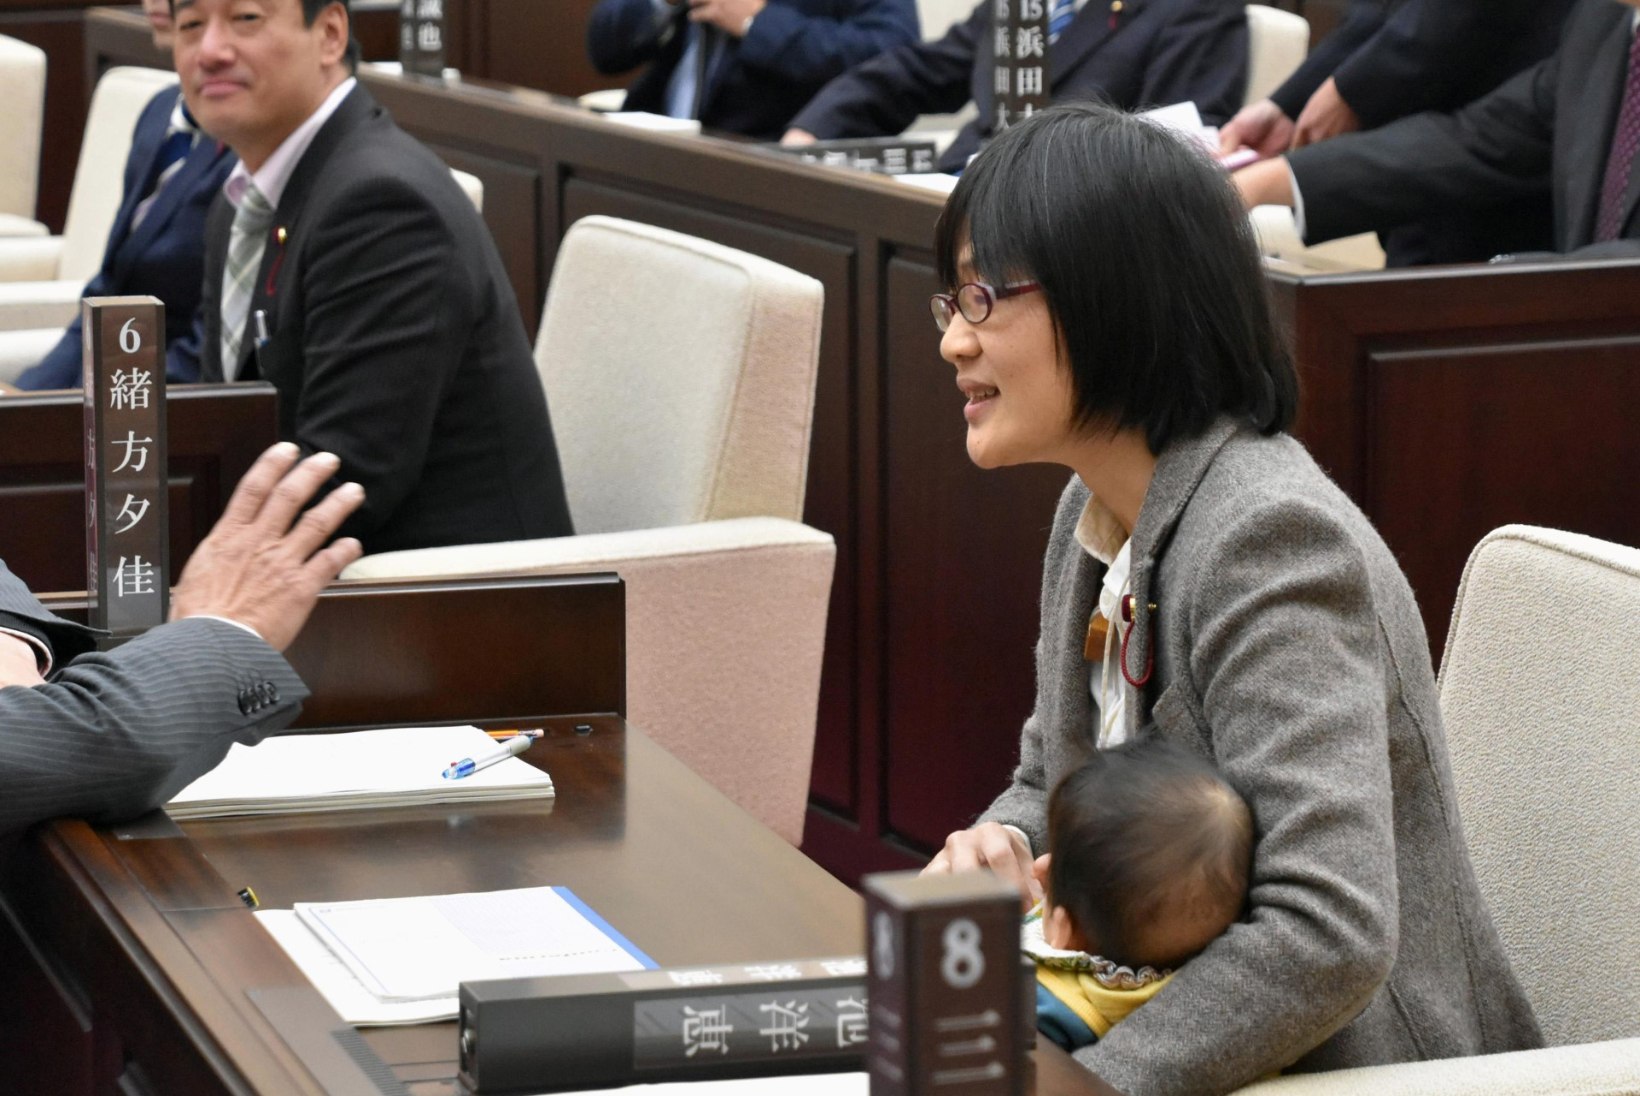 Jaapani poliitiku beebit käsitleti istungil kui kõrvalist isikut, mistõttu tuli lapsel lahkuda